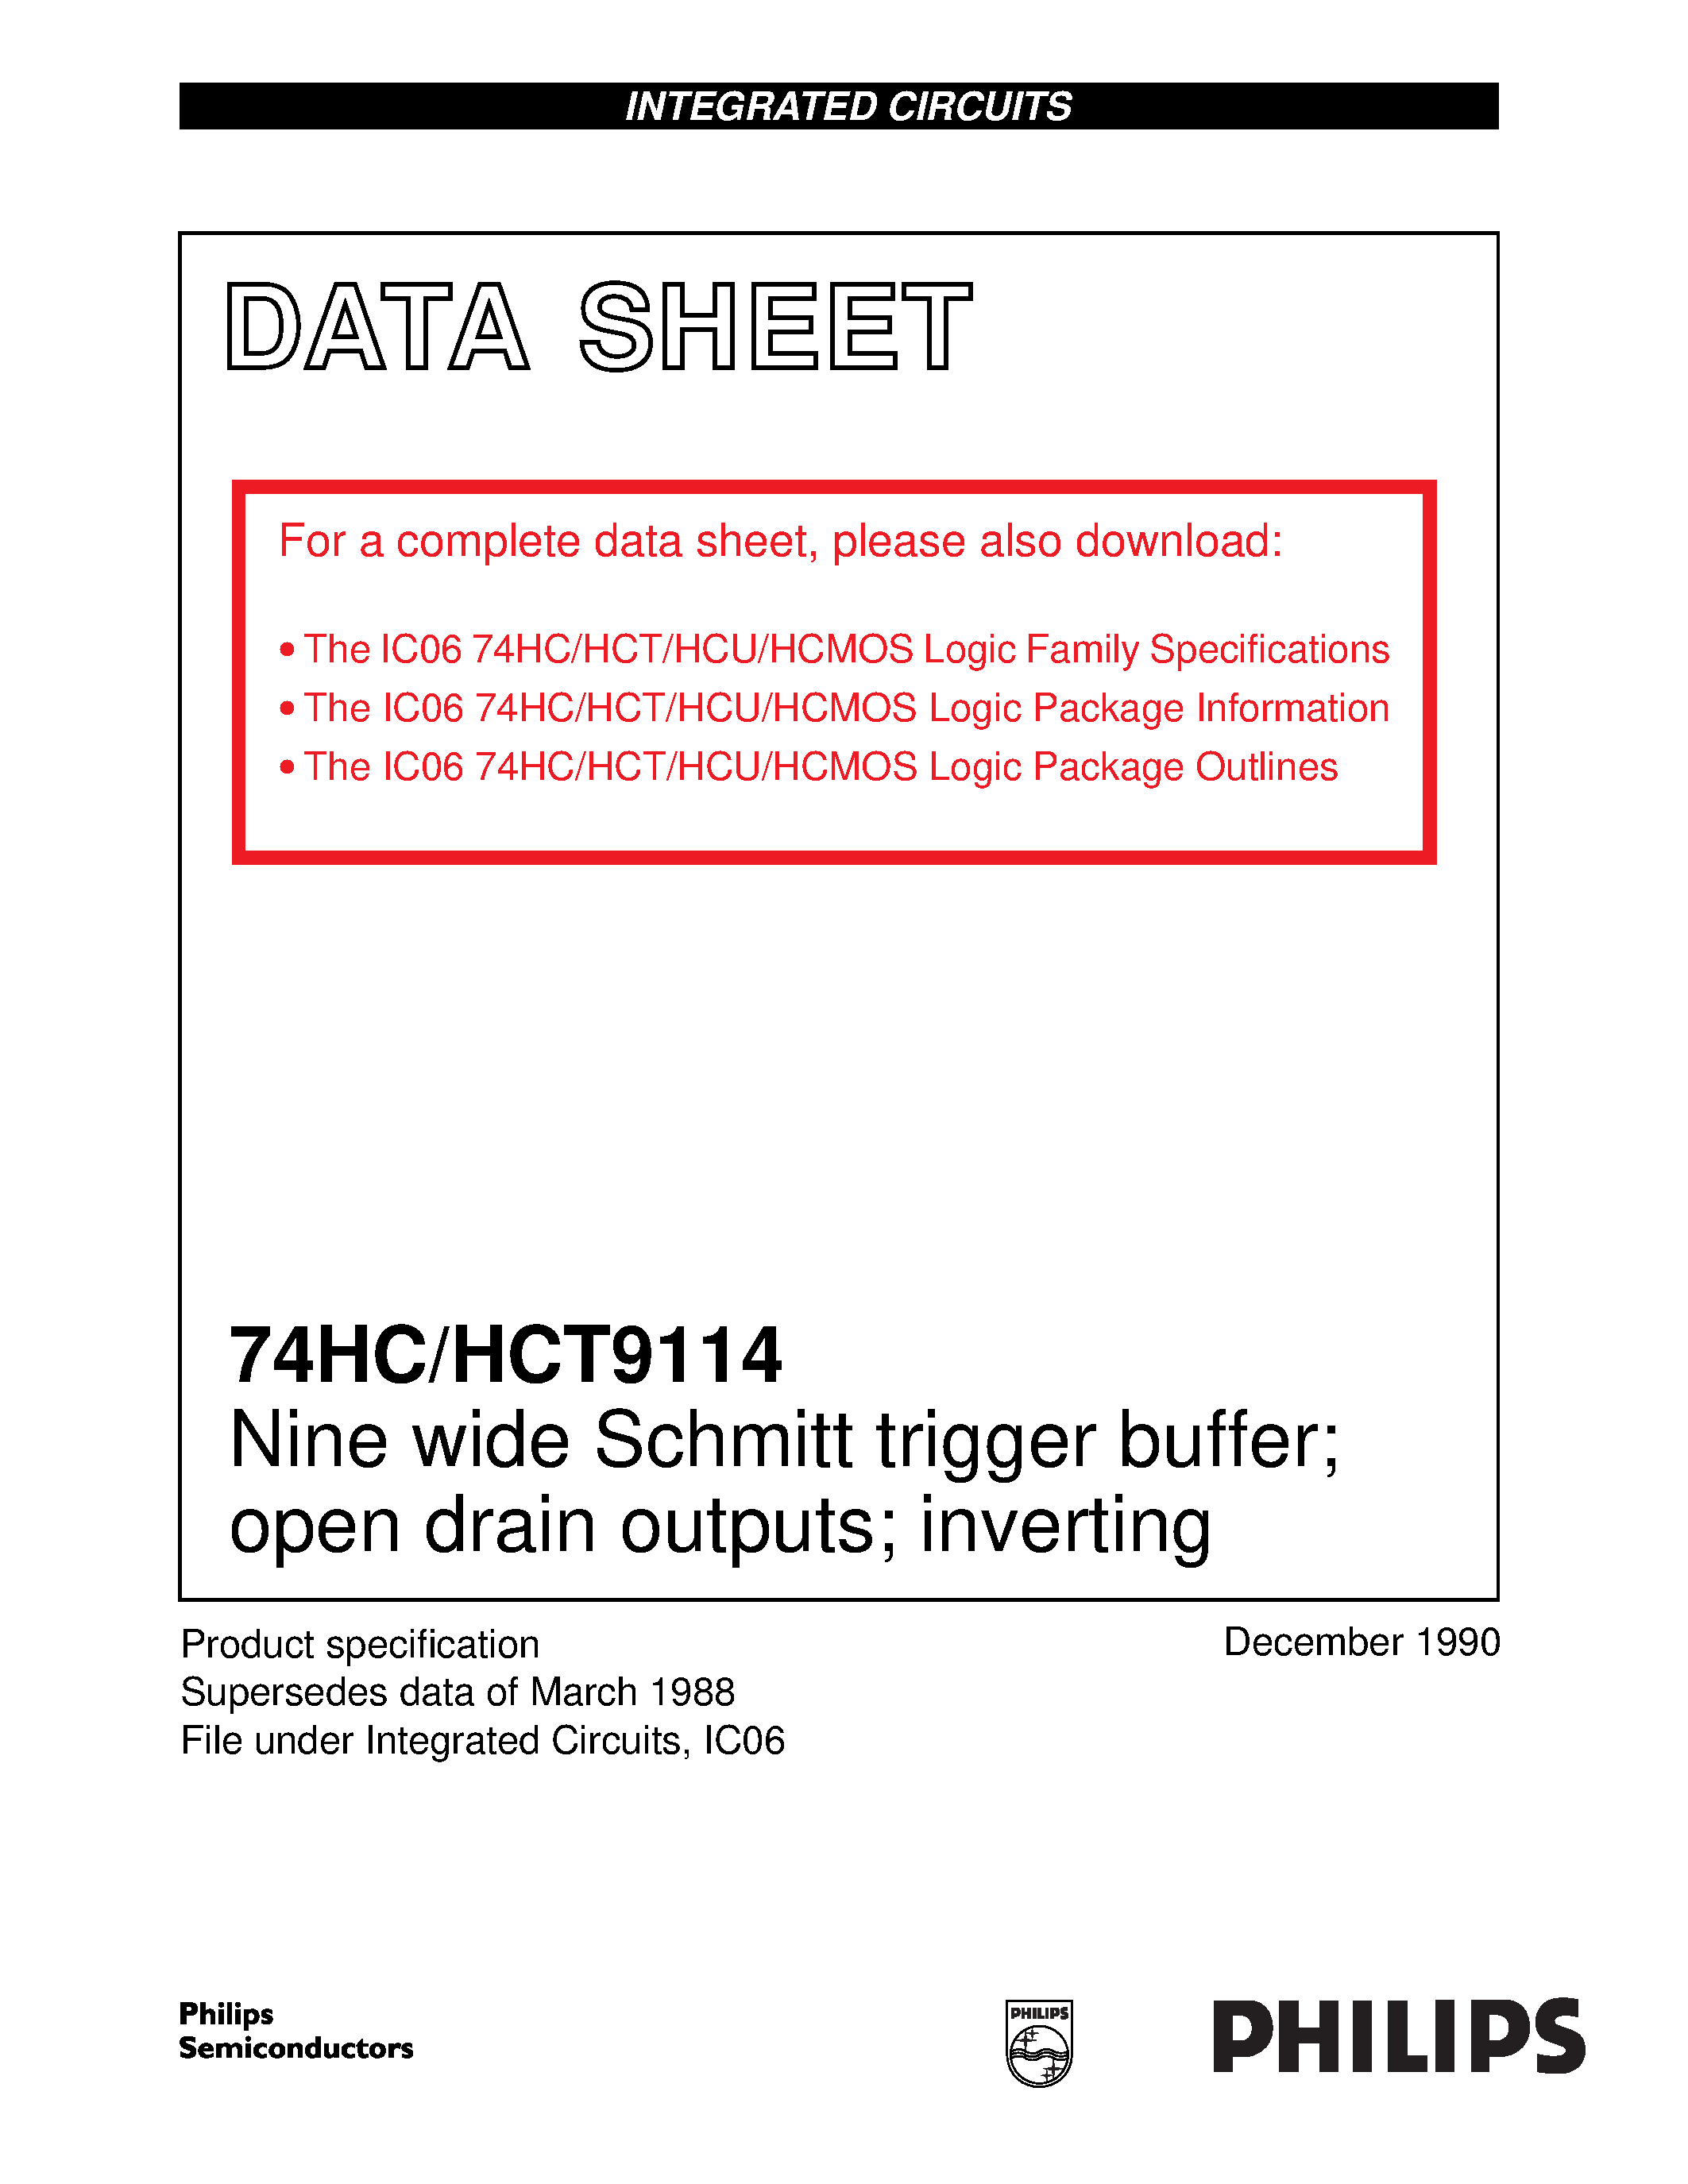 Datasheet 74HCT9114 - Nine wide Schmitt trigger buffer; open drain outputs; inverting page 1